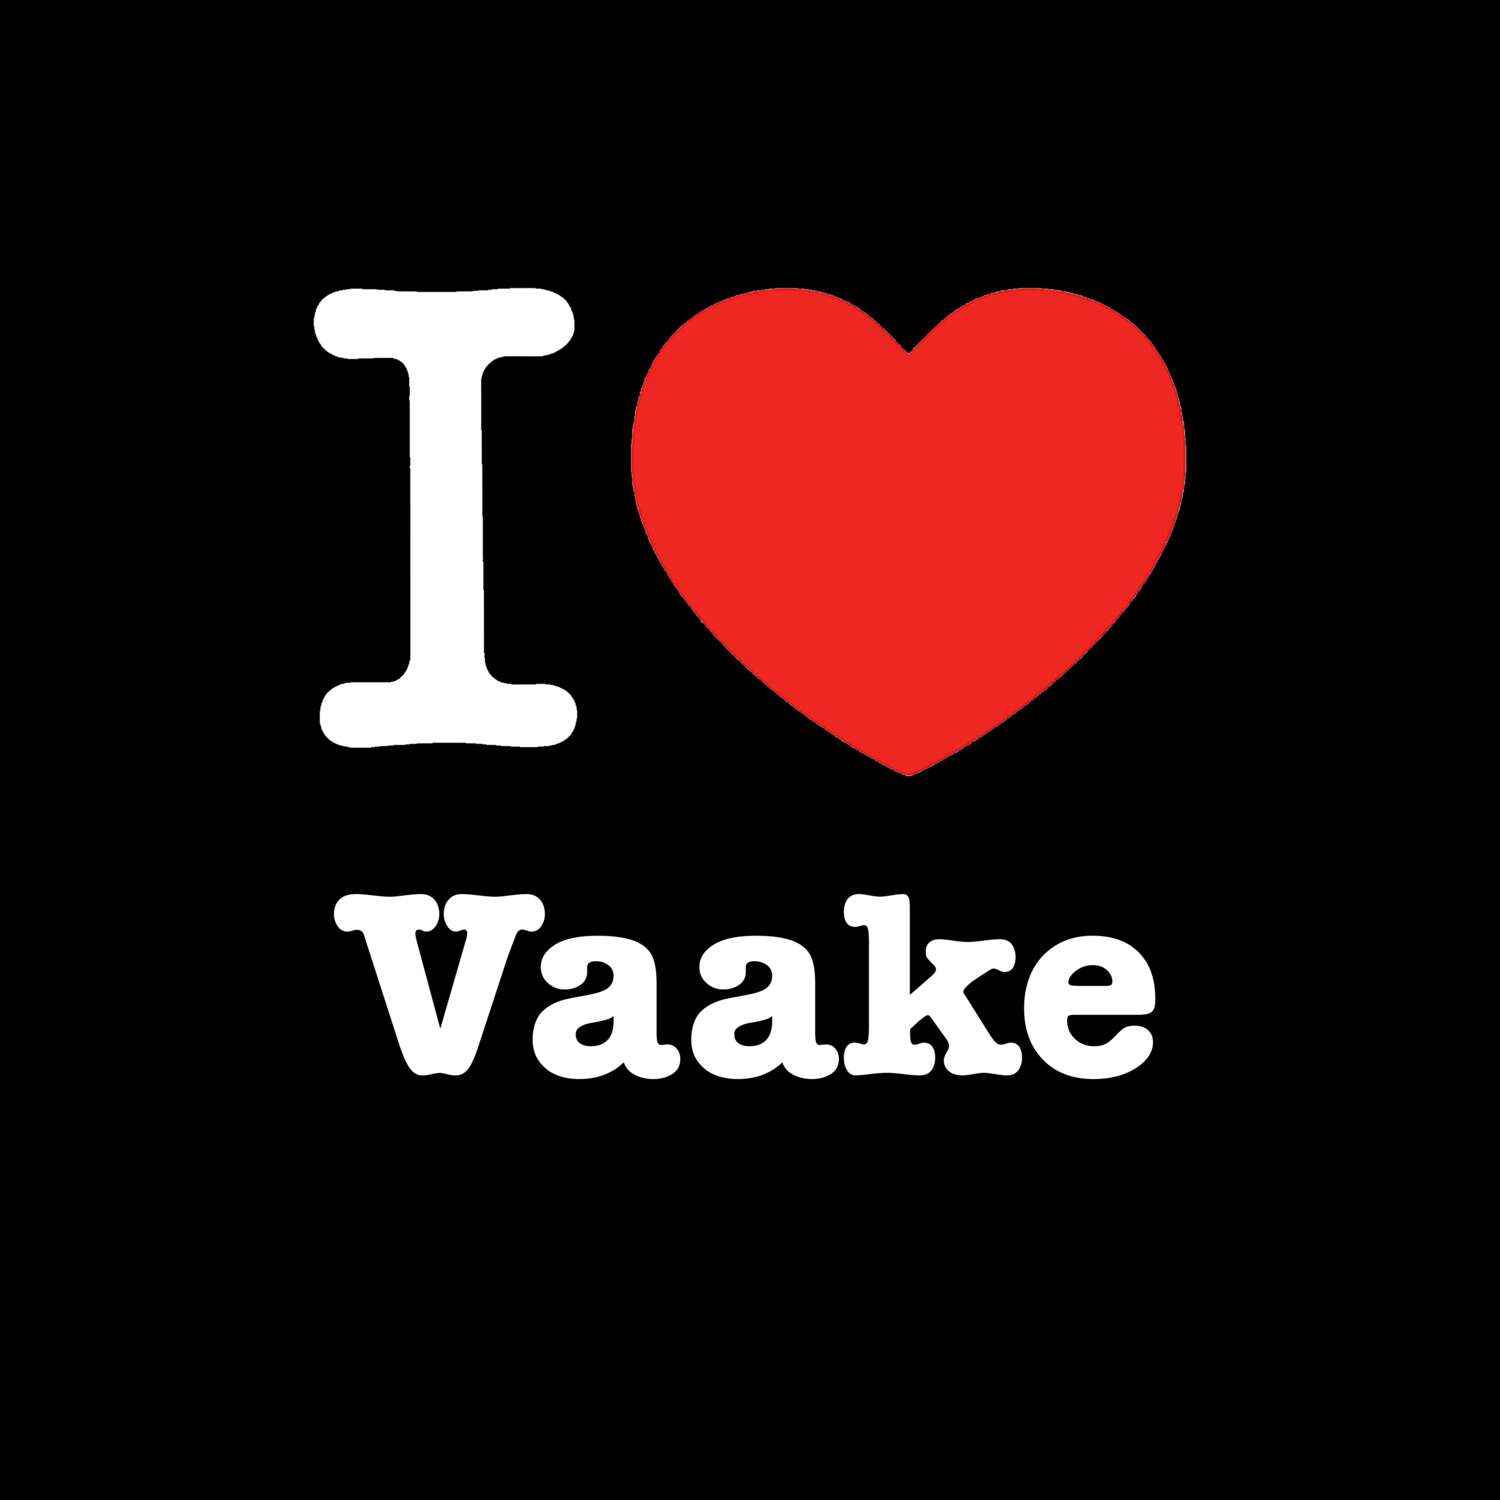 Vaake T-Shirt »I love«